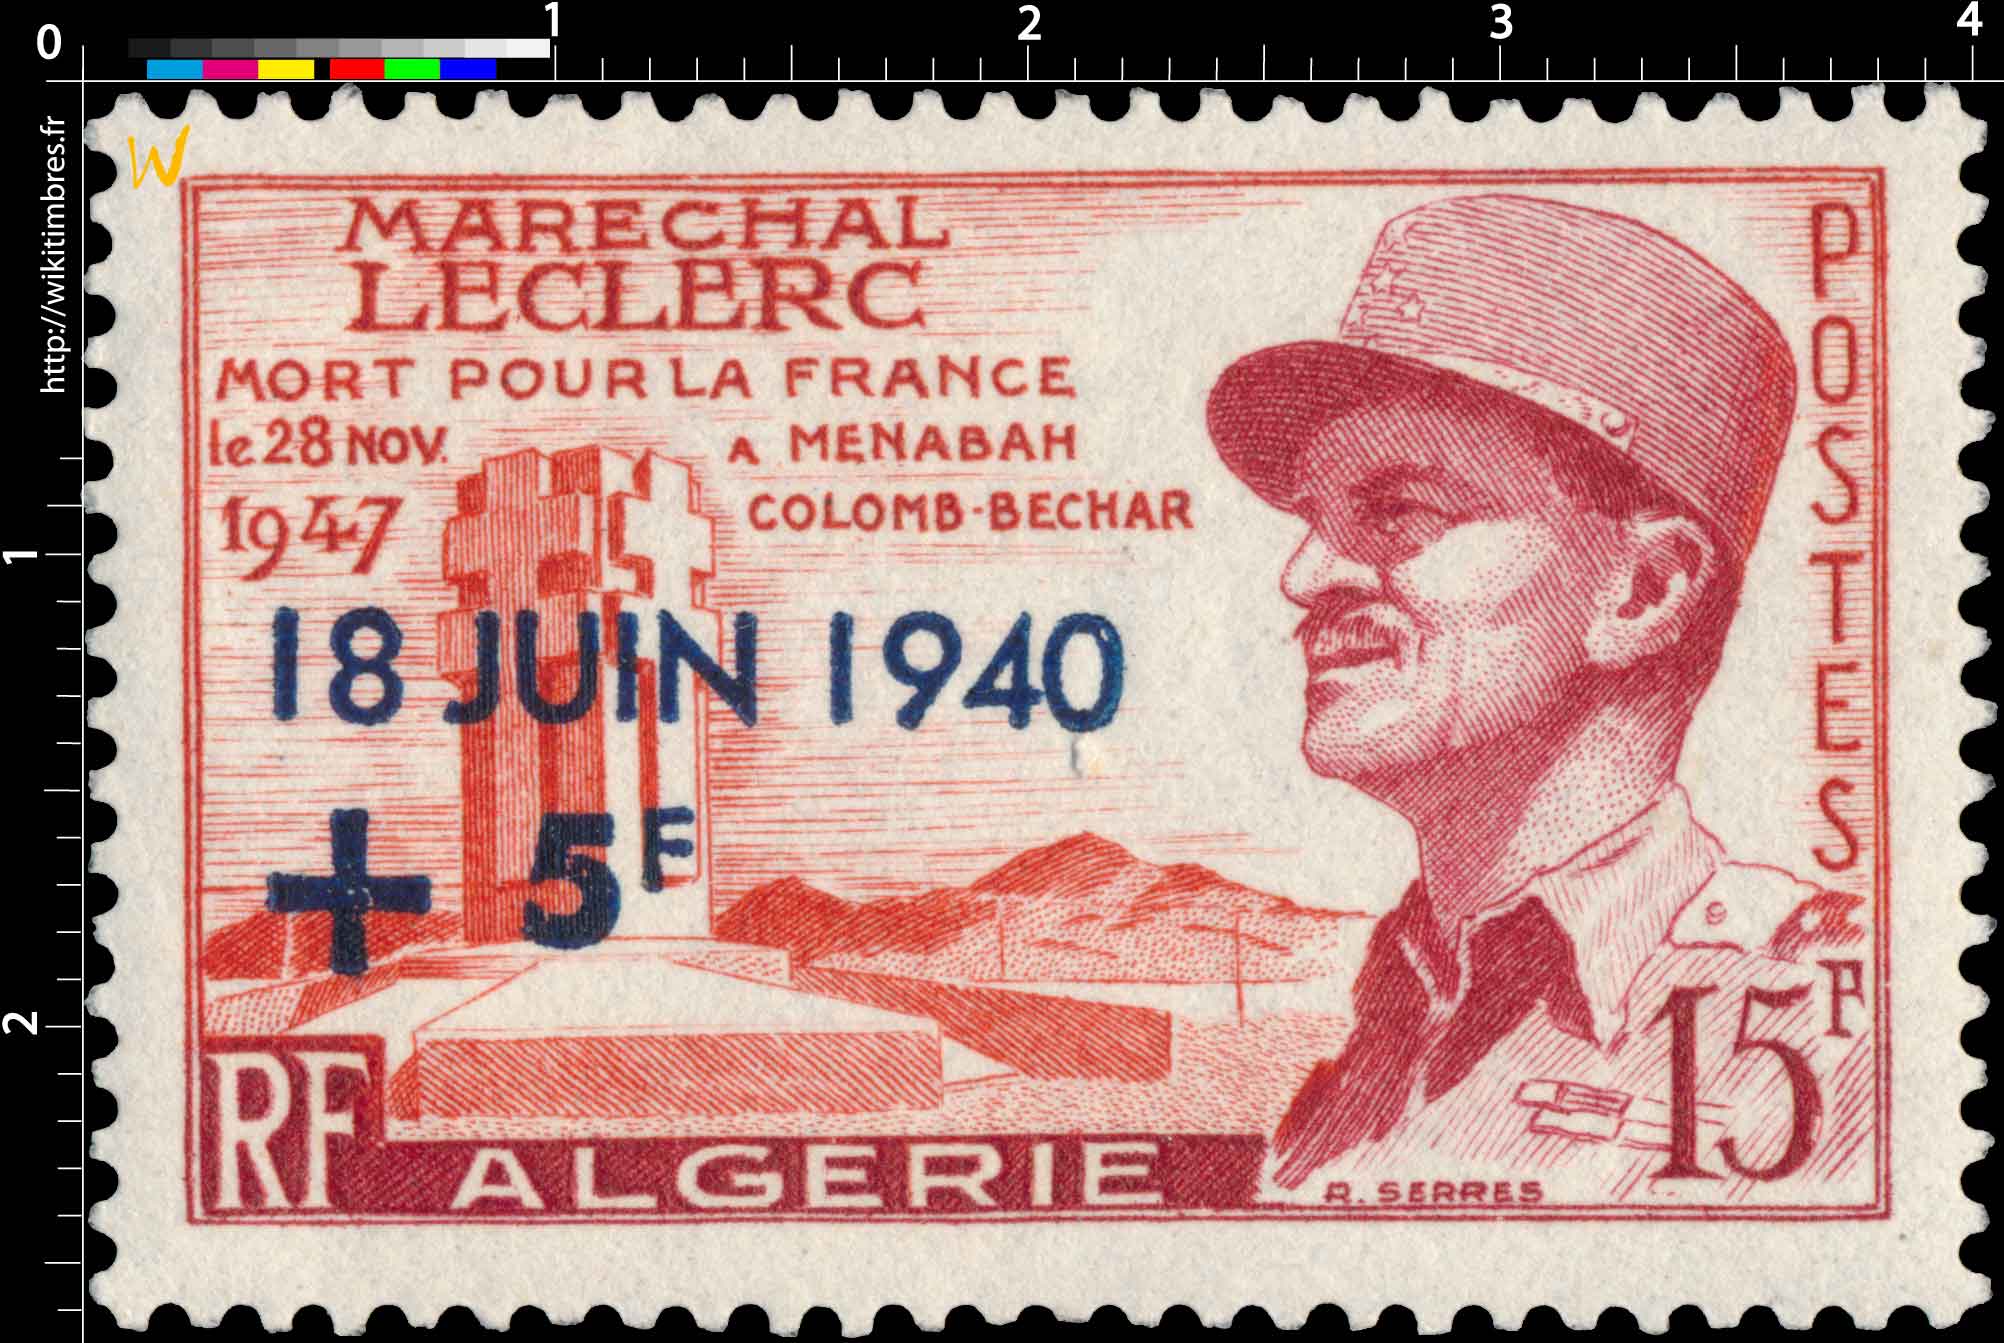 Algérie - Maréchal Leclerc mort pour la France